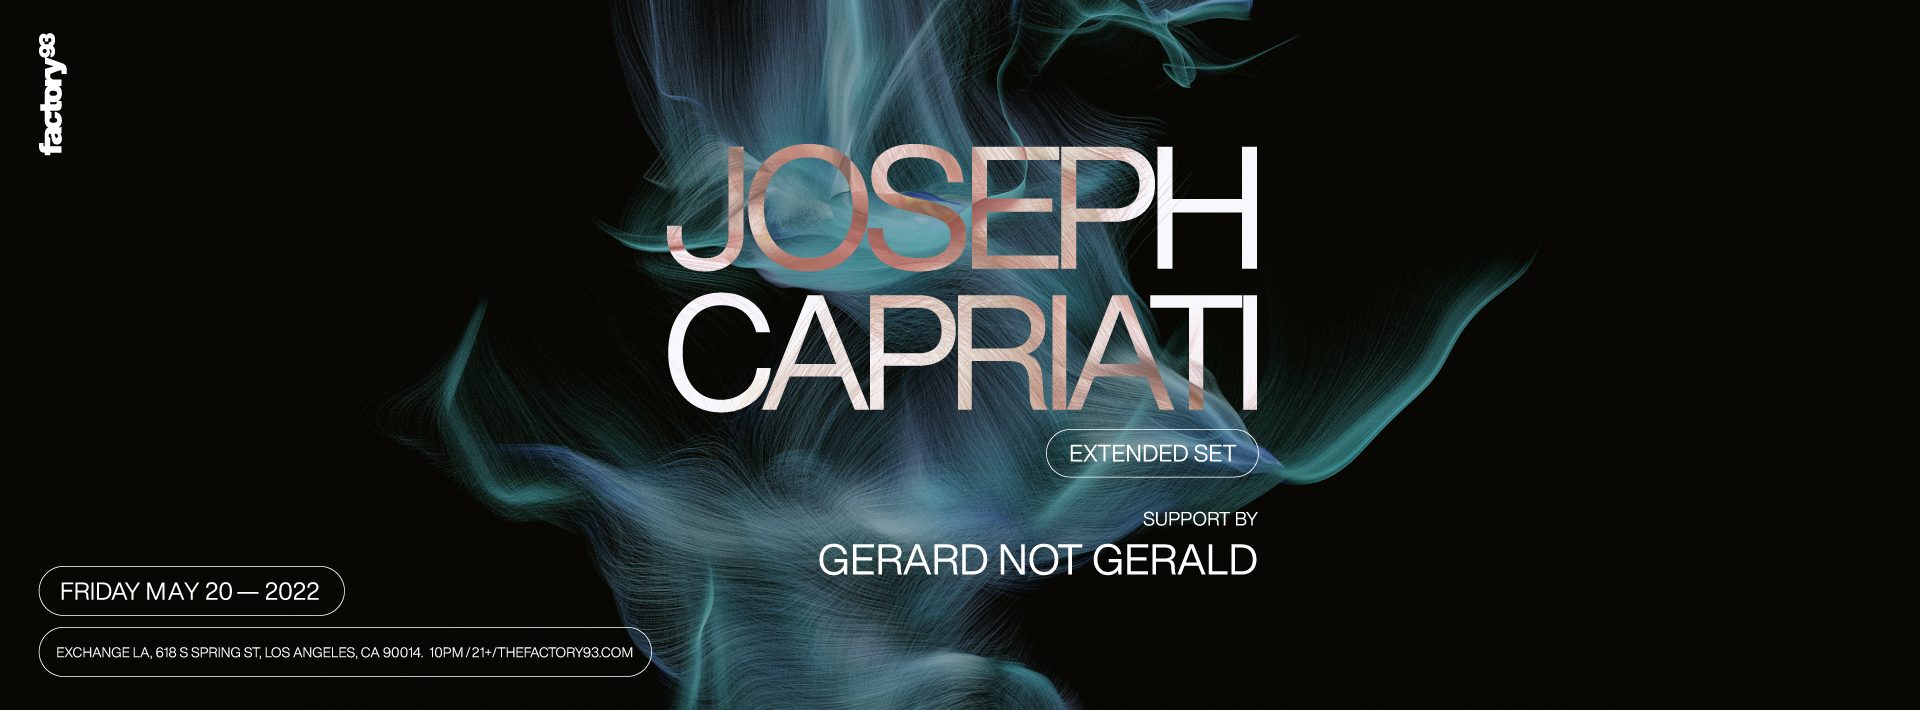 Joseph Capriati (Extended Set)